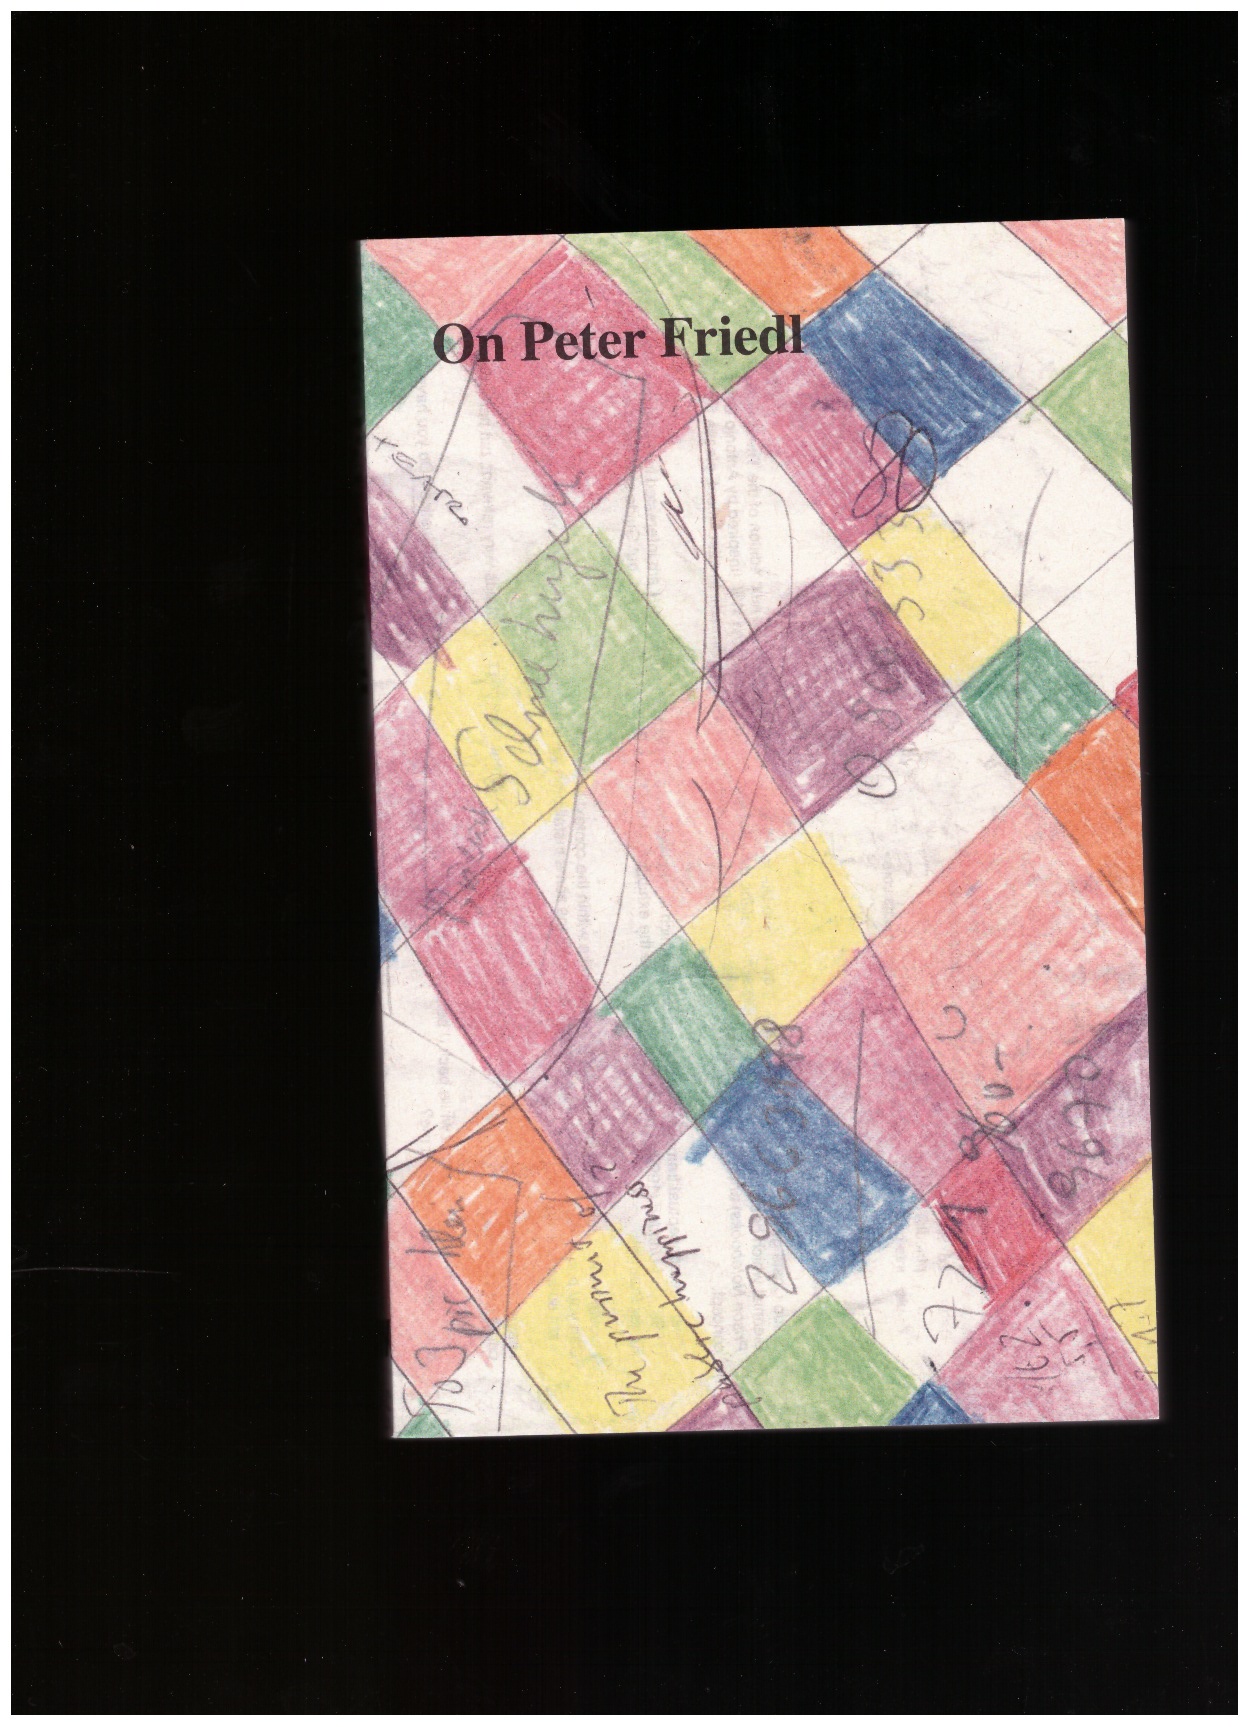 GRUIJTHUIJSEN, Krist (ed.) - On Peter Friedl